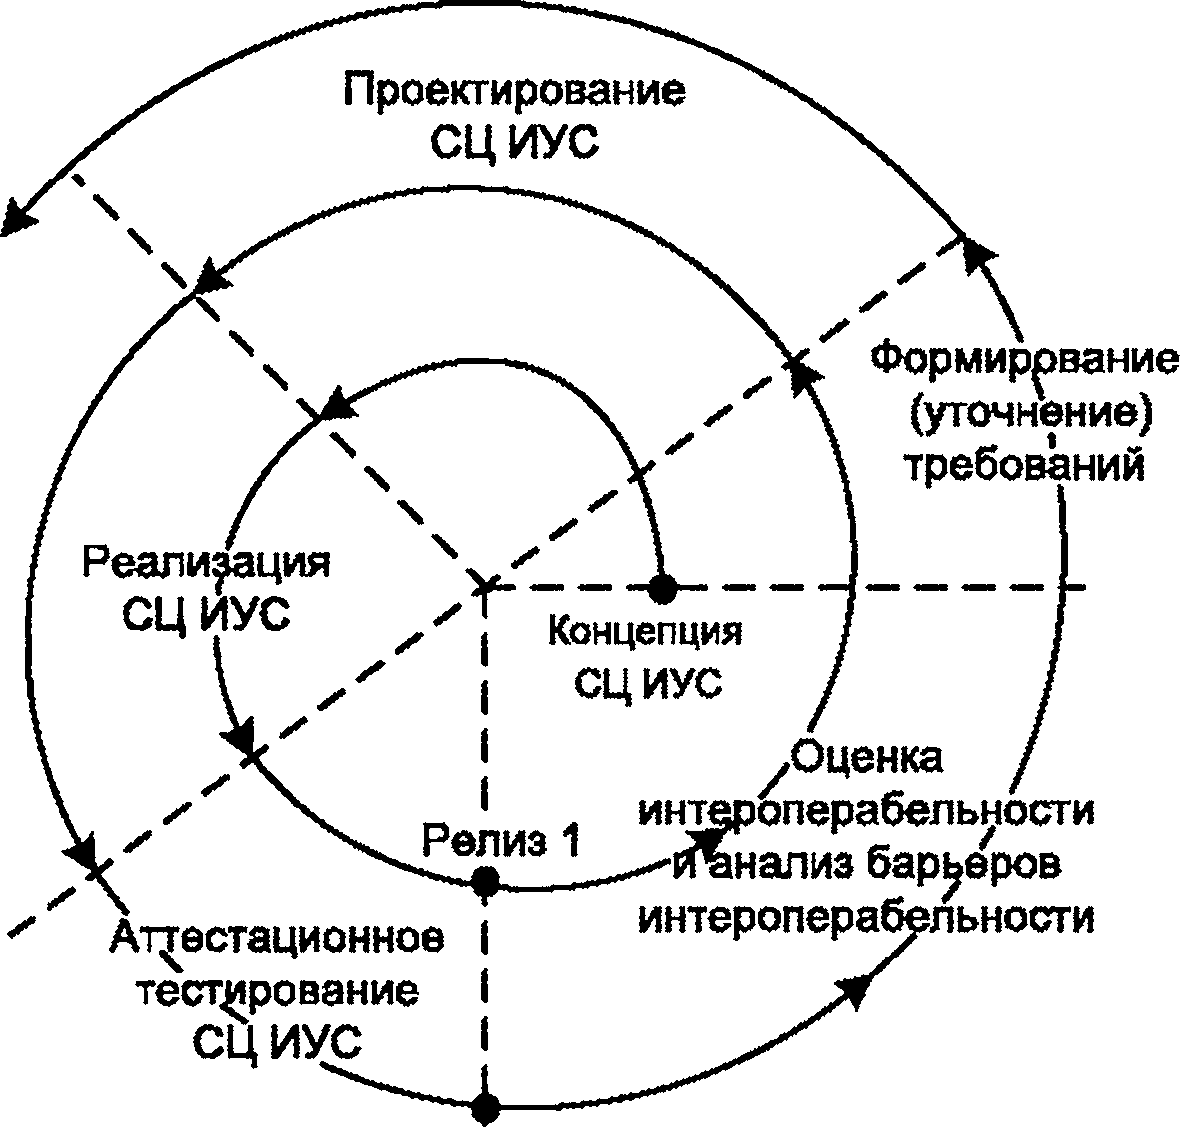 - Рисунок 5 - Спиральный (эволюционный) жизненный цикл разработки СЦ ИУС